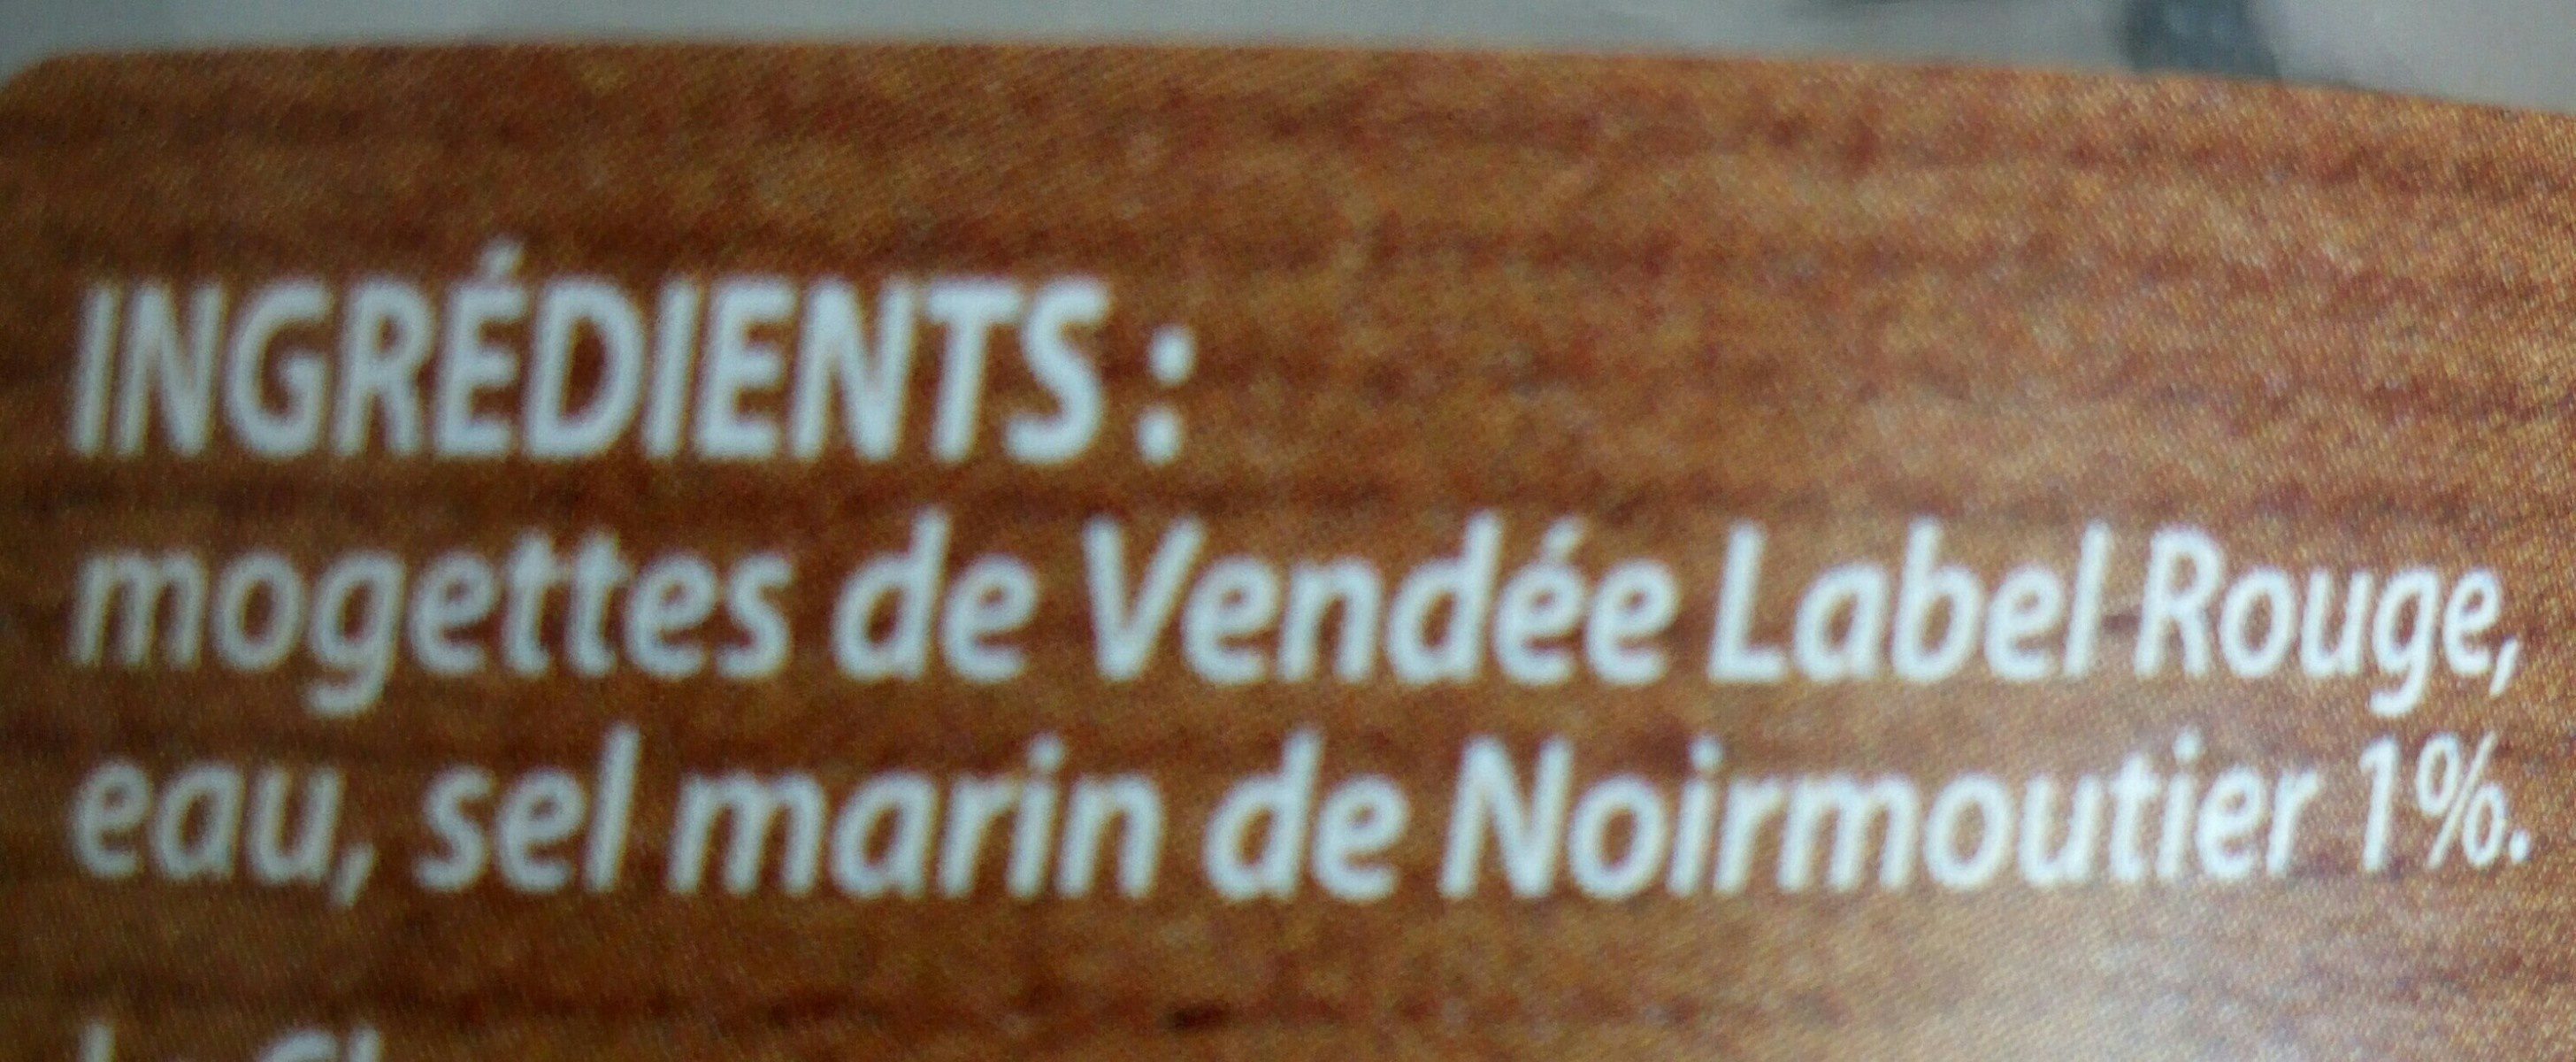 Mogette de Vendée cuite au naturel au sel marin de Noirmoutier - Ingrédients